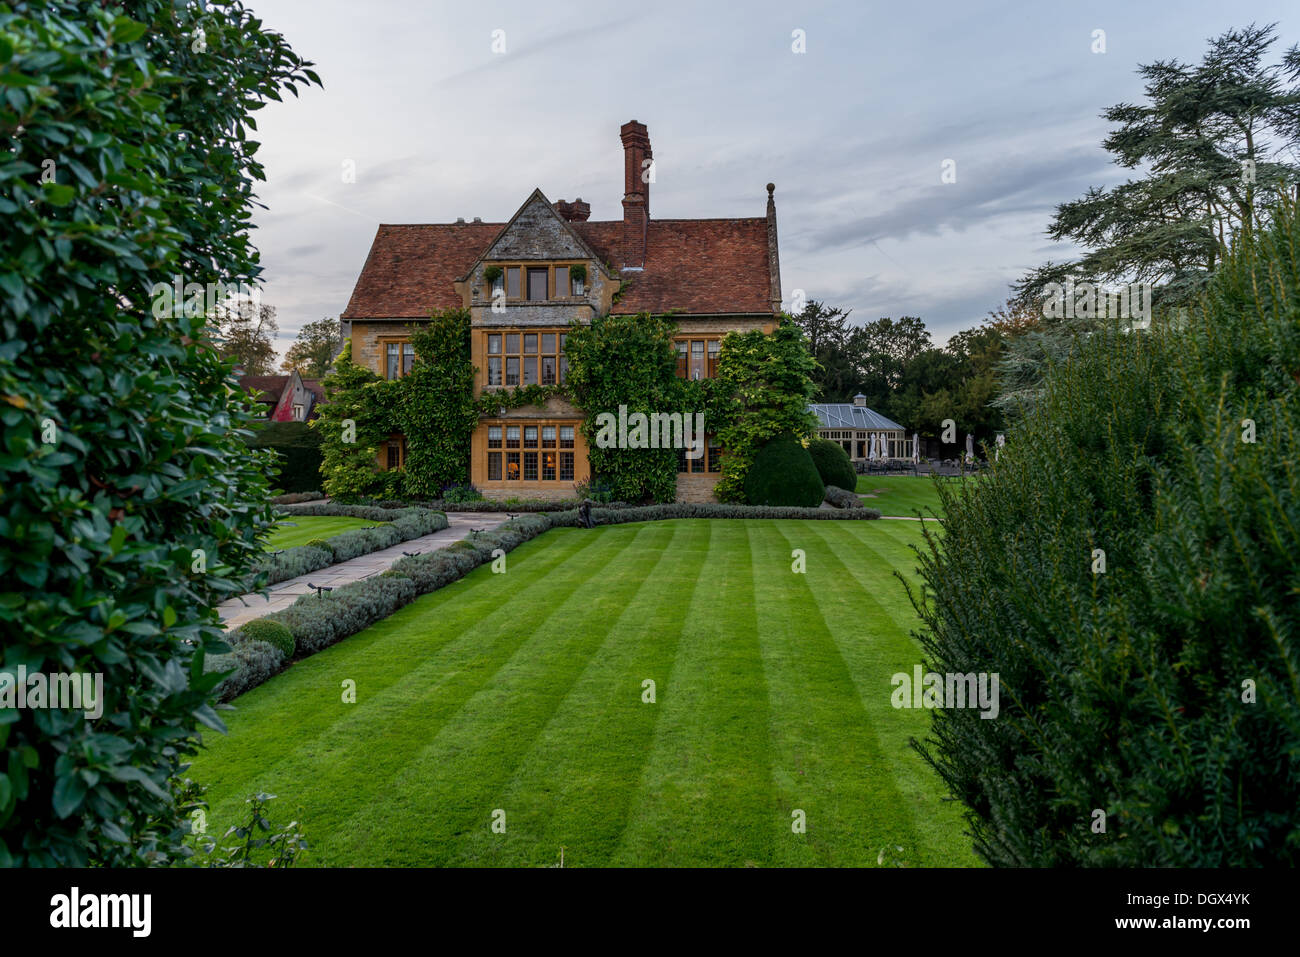 The main manor house of Le Manoir Aux Quat'Saisons, Oxfordshire Stock Photo